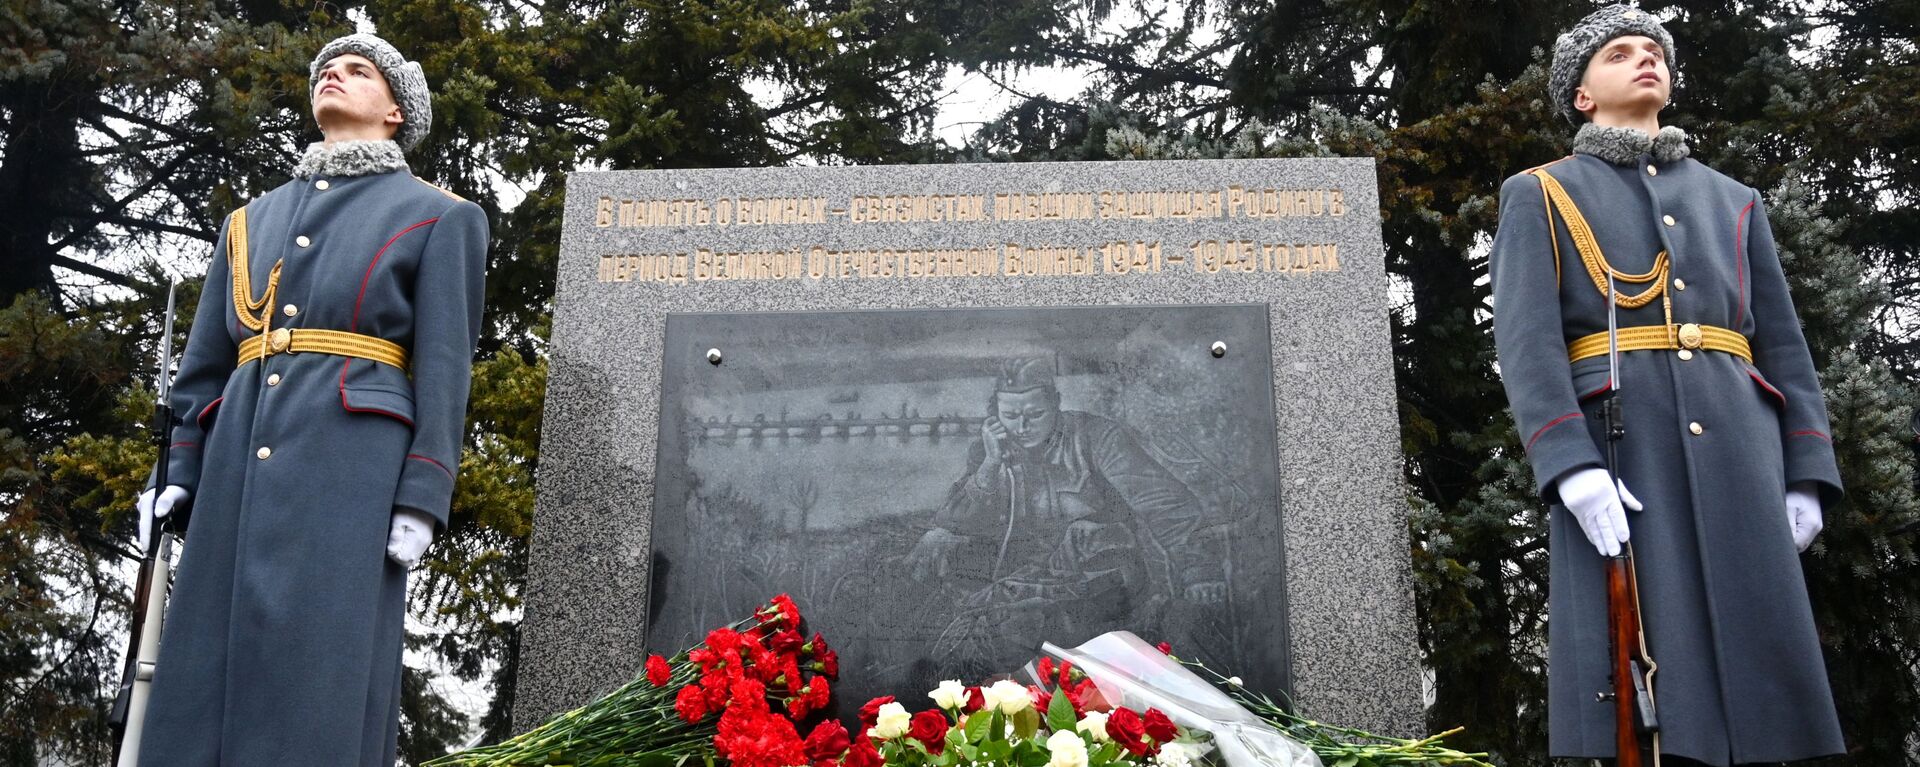 War Memorial in Rostov - Sputnik International, 1920, 09.04.2020